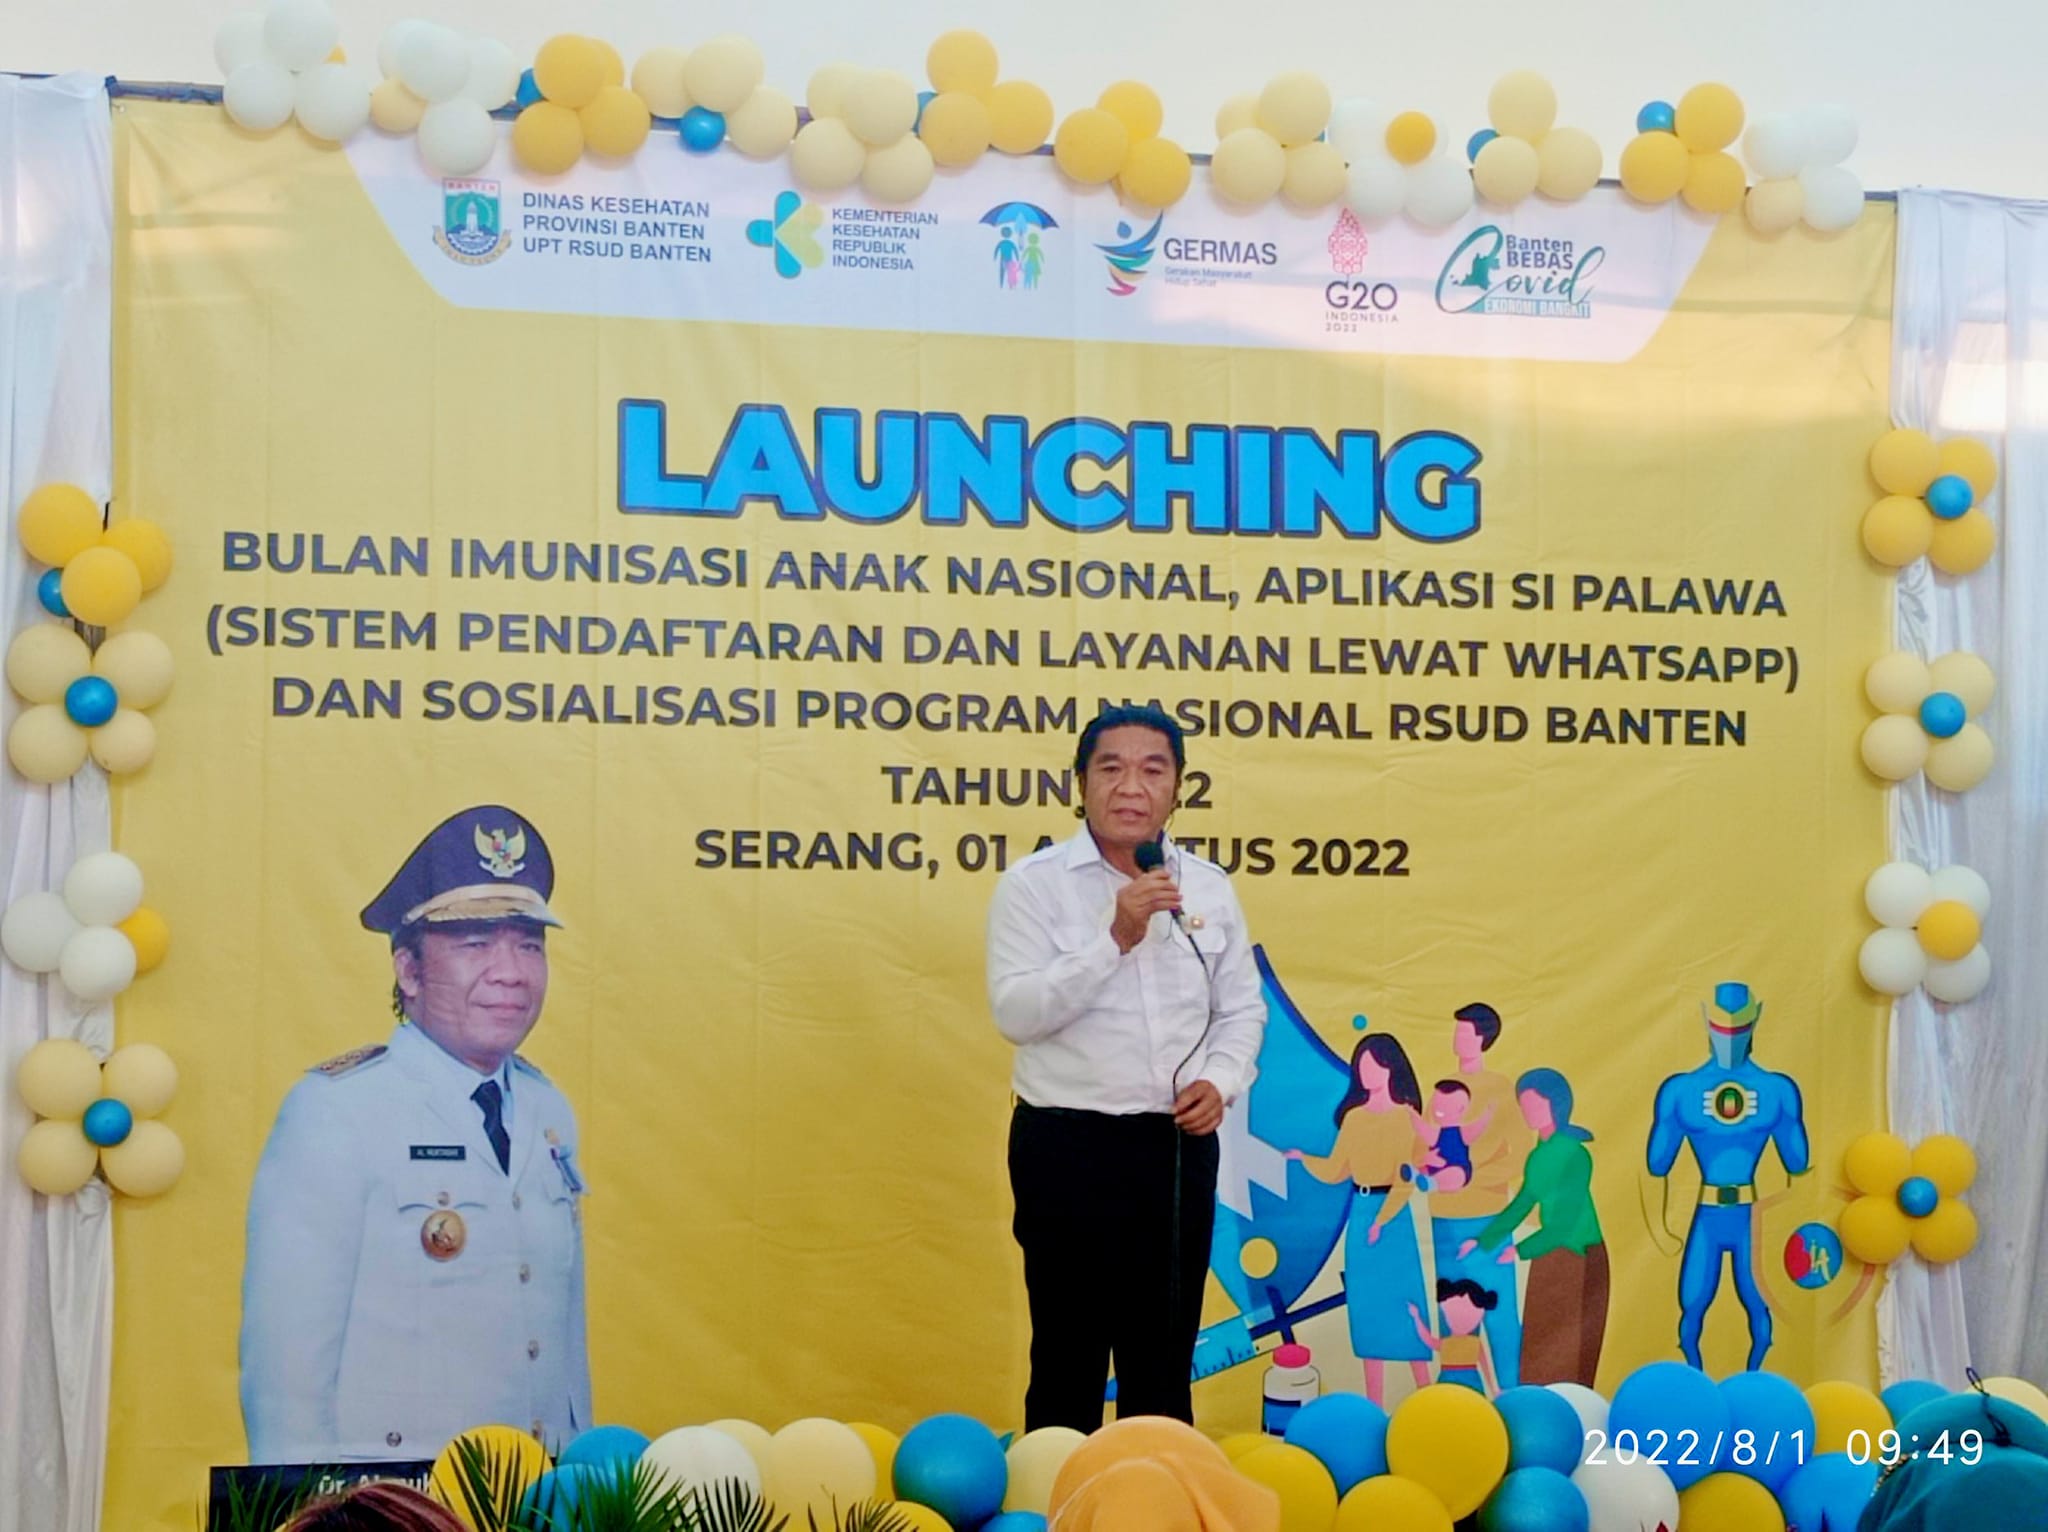  Launching Bulan Imunisasi Anak Nasional